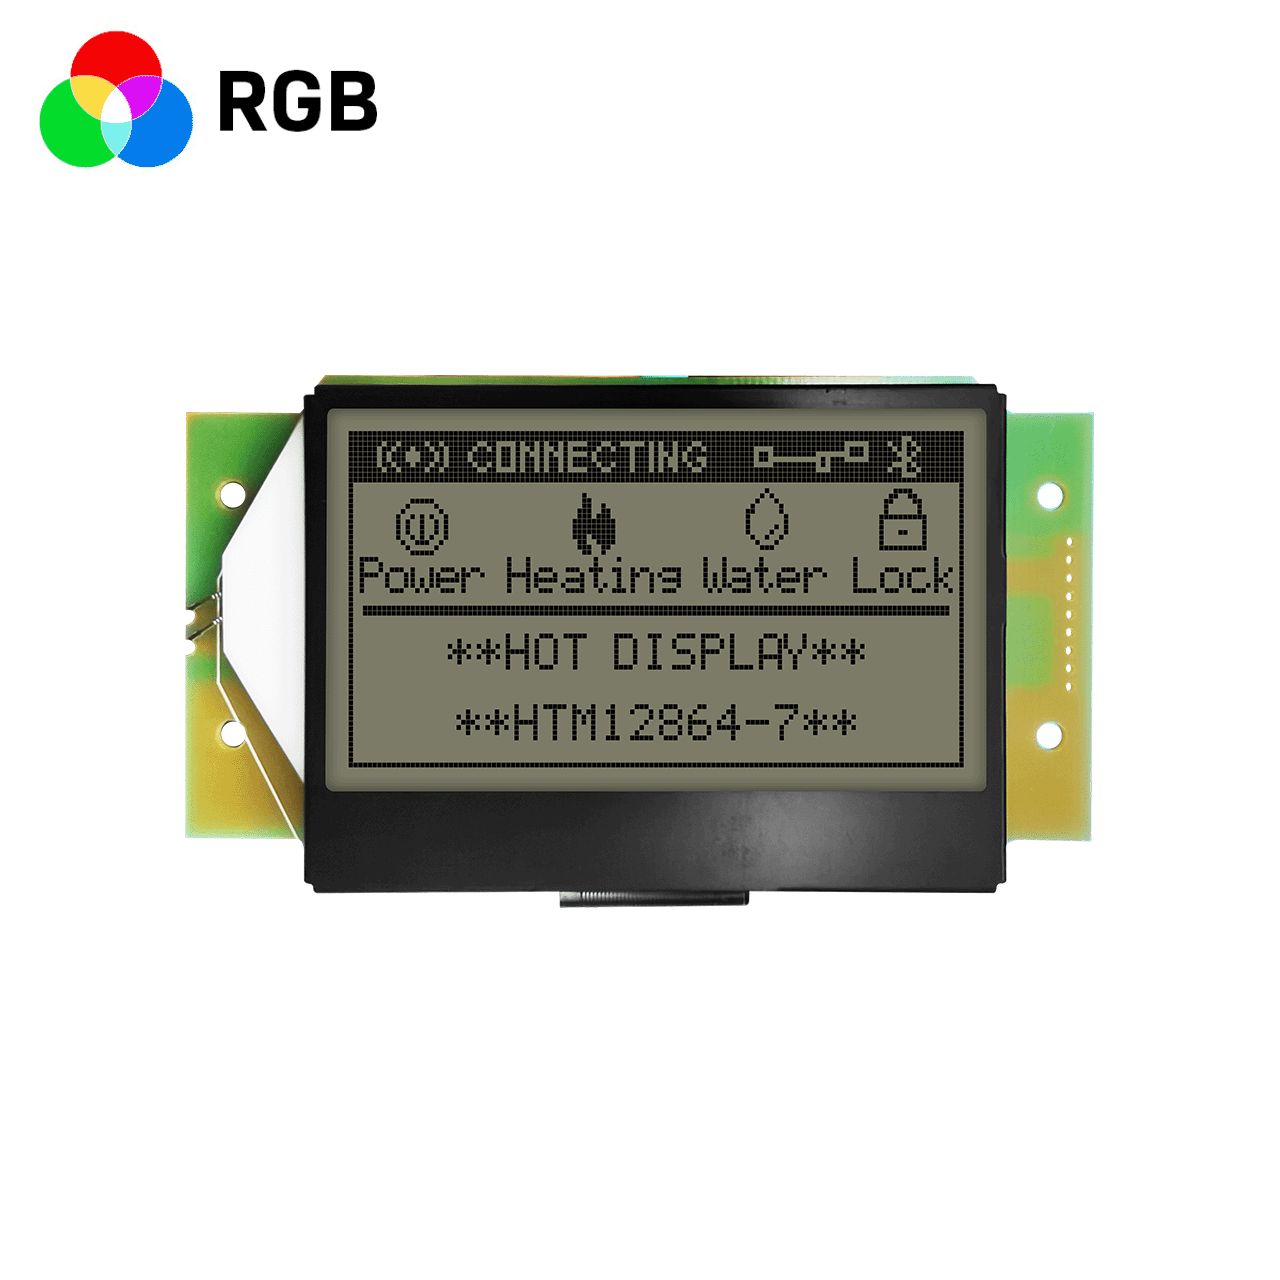 3.0 英寸RGB红绿蓝图形液晶显示模块 | 128x64 图形显示液晶模块 | FSTN+ 黄绿背光 | 5.0 v | ST7565R控制器 | 全透偏光片